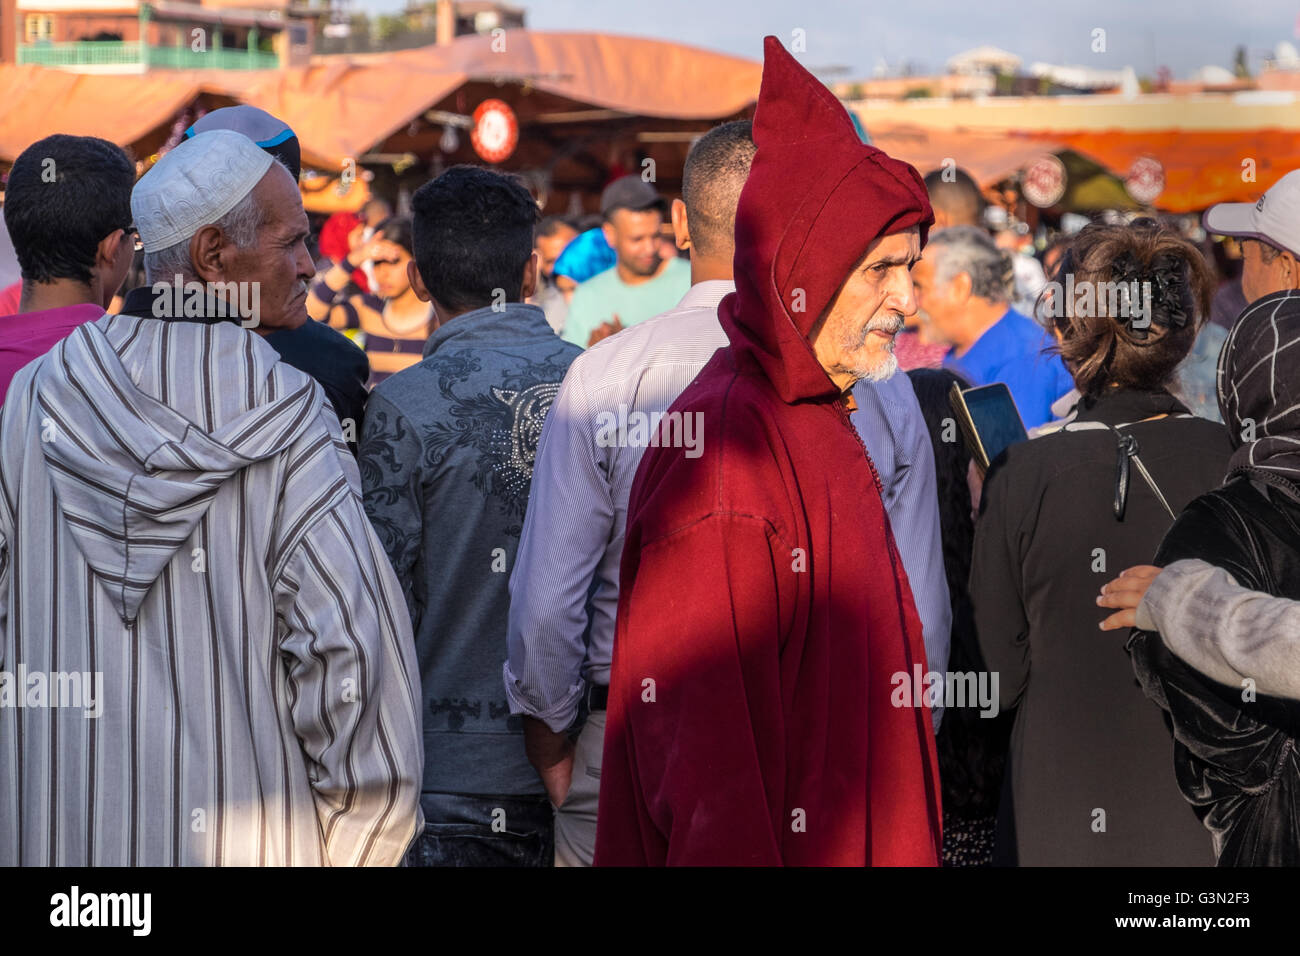 Habillé de façon traditionnelle, l'homme marocain Marrakech / Marrakech, Maroc Banque D'Images